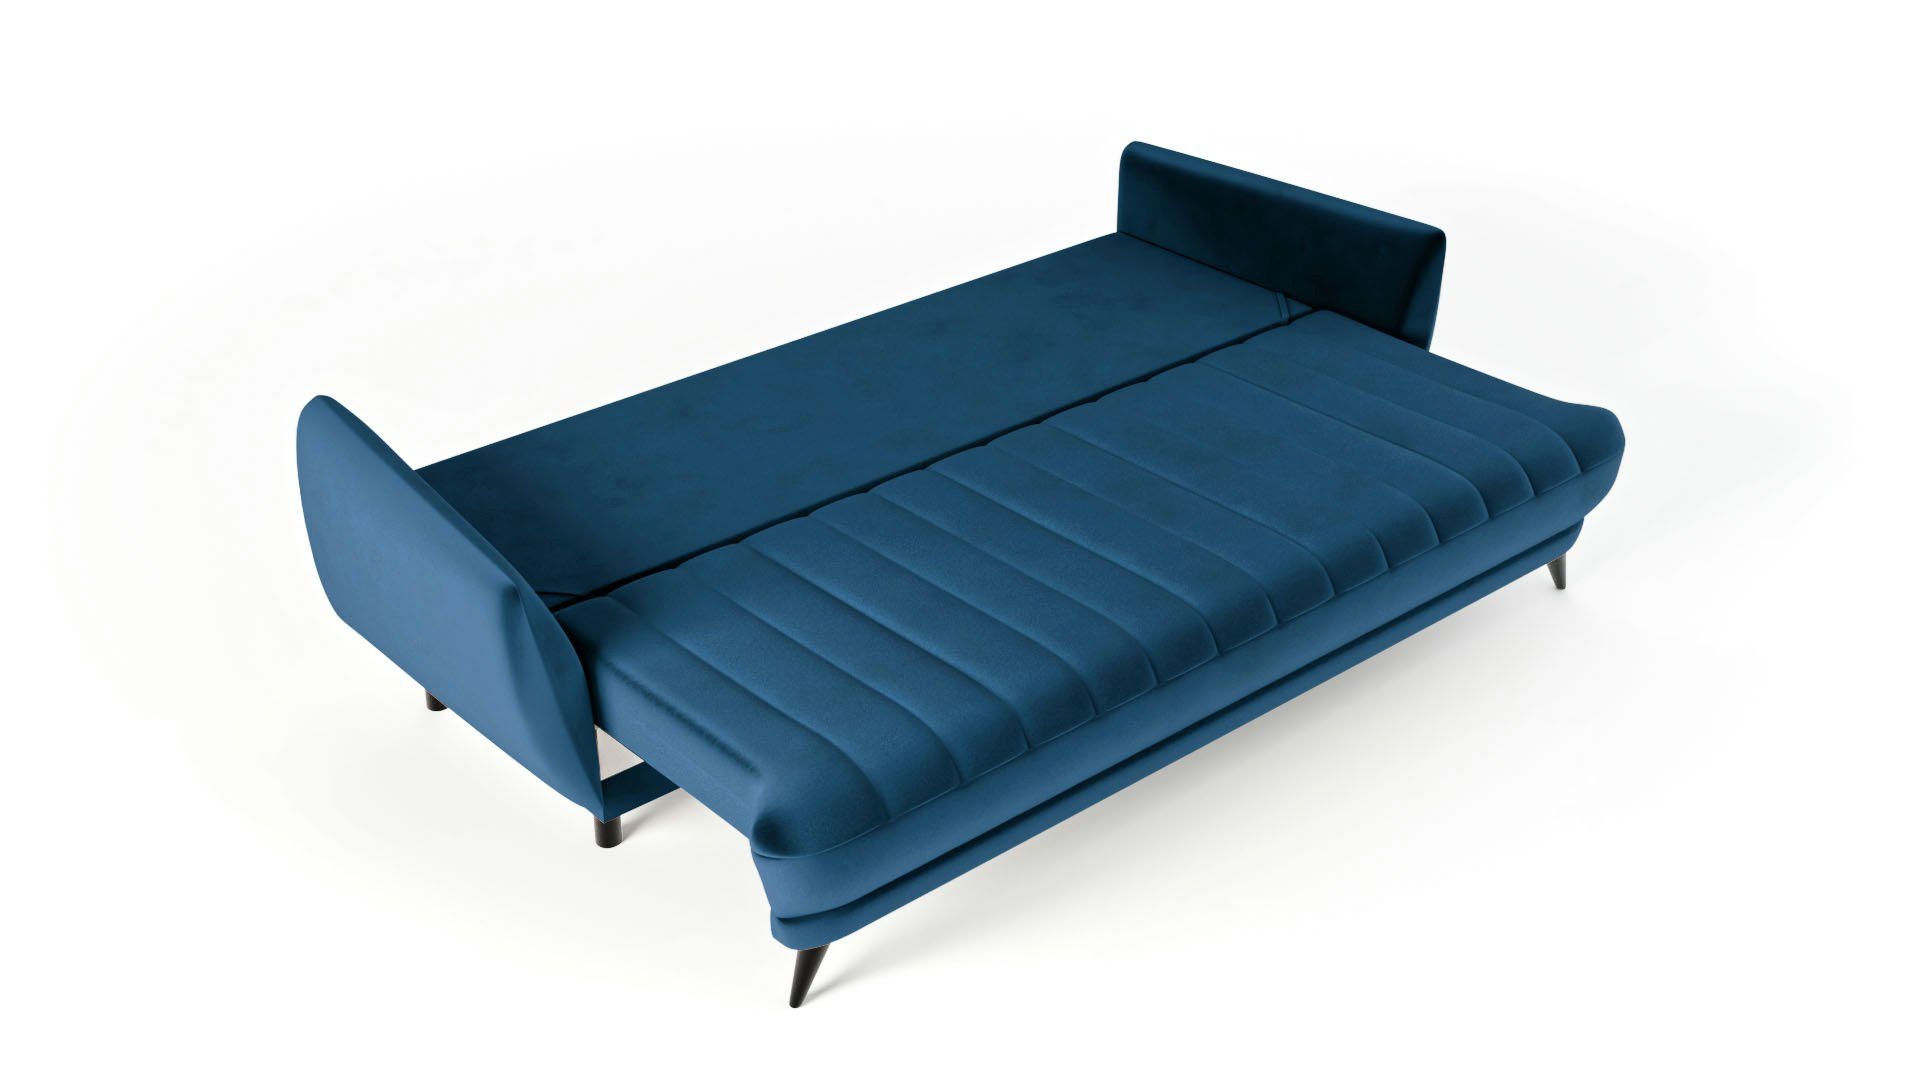 Wohnzimmer - Dreisitziges Sofa Elegantes 3-Sitzer Rolo 3-Sitzer Blau - Siblo Sofa bequemes modernes Sofa - 3